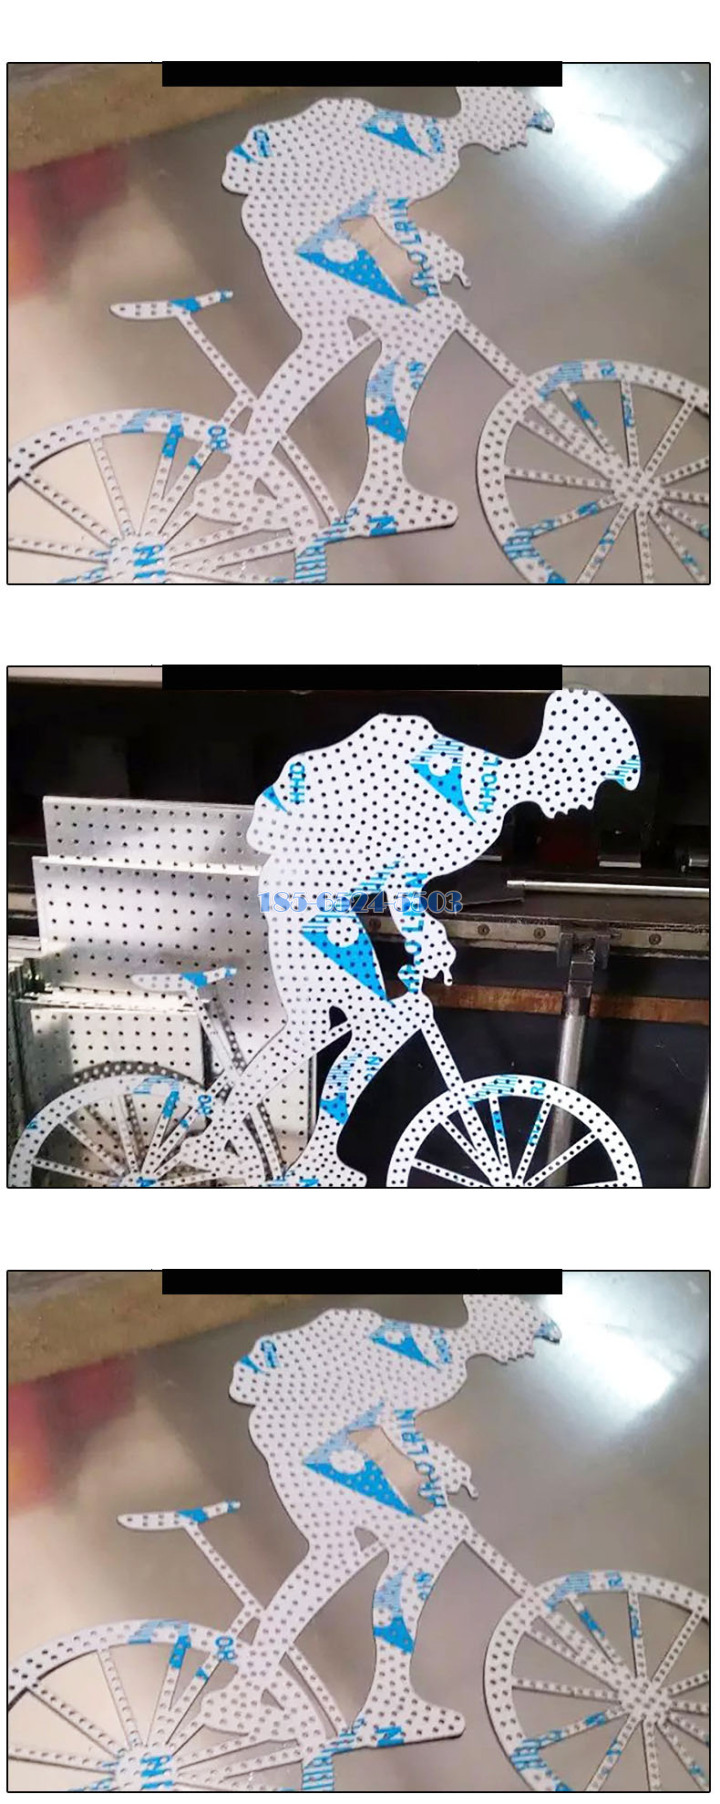 踩自行车的小人雕刻铝板工艺品